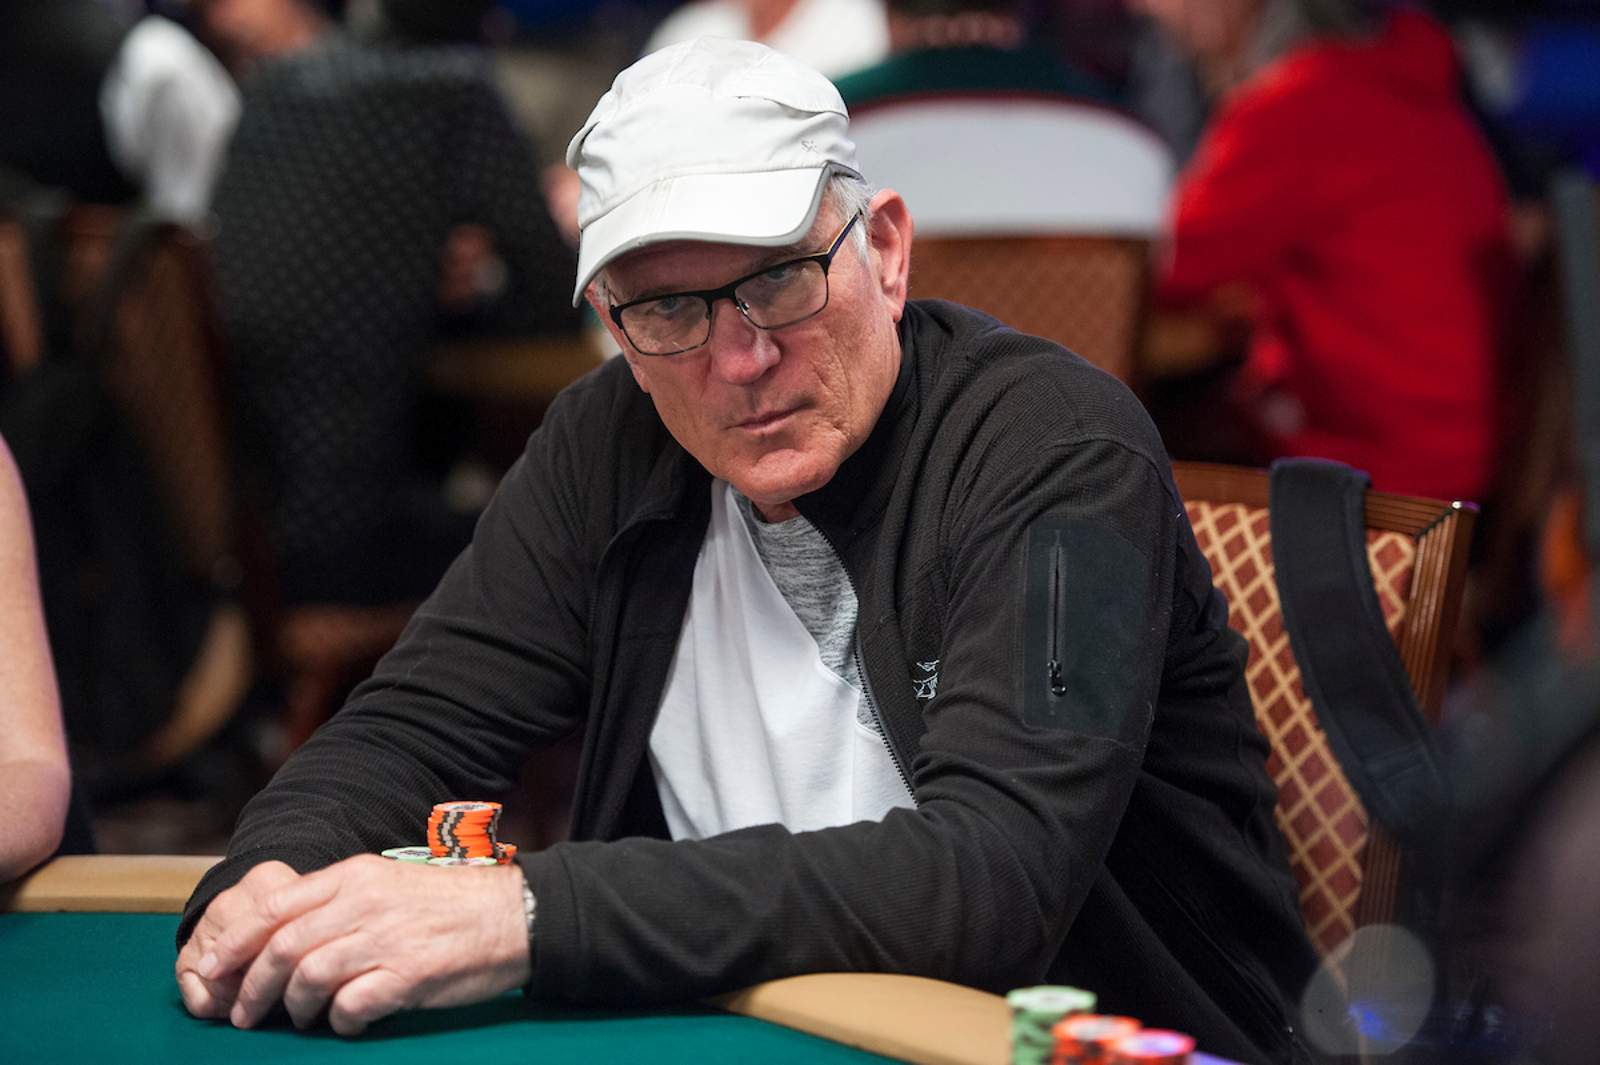 Lillge Leads Seniors, Heimiller Has Another Shot on PokerGO